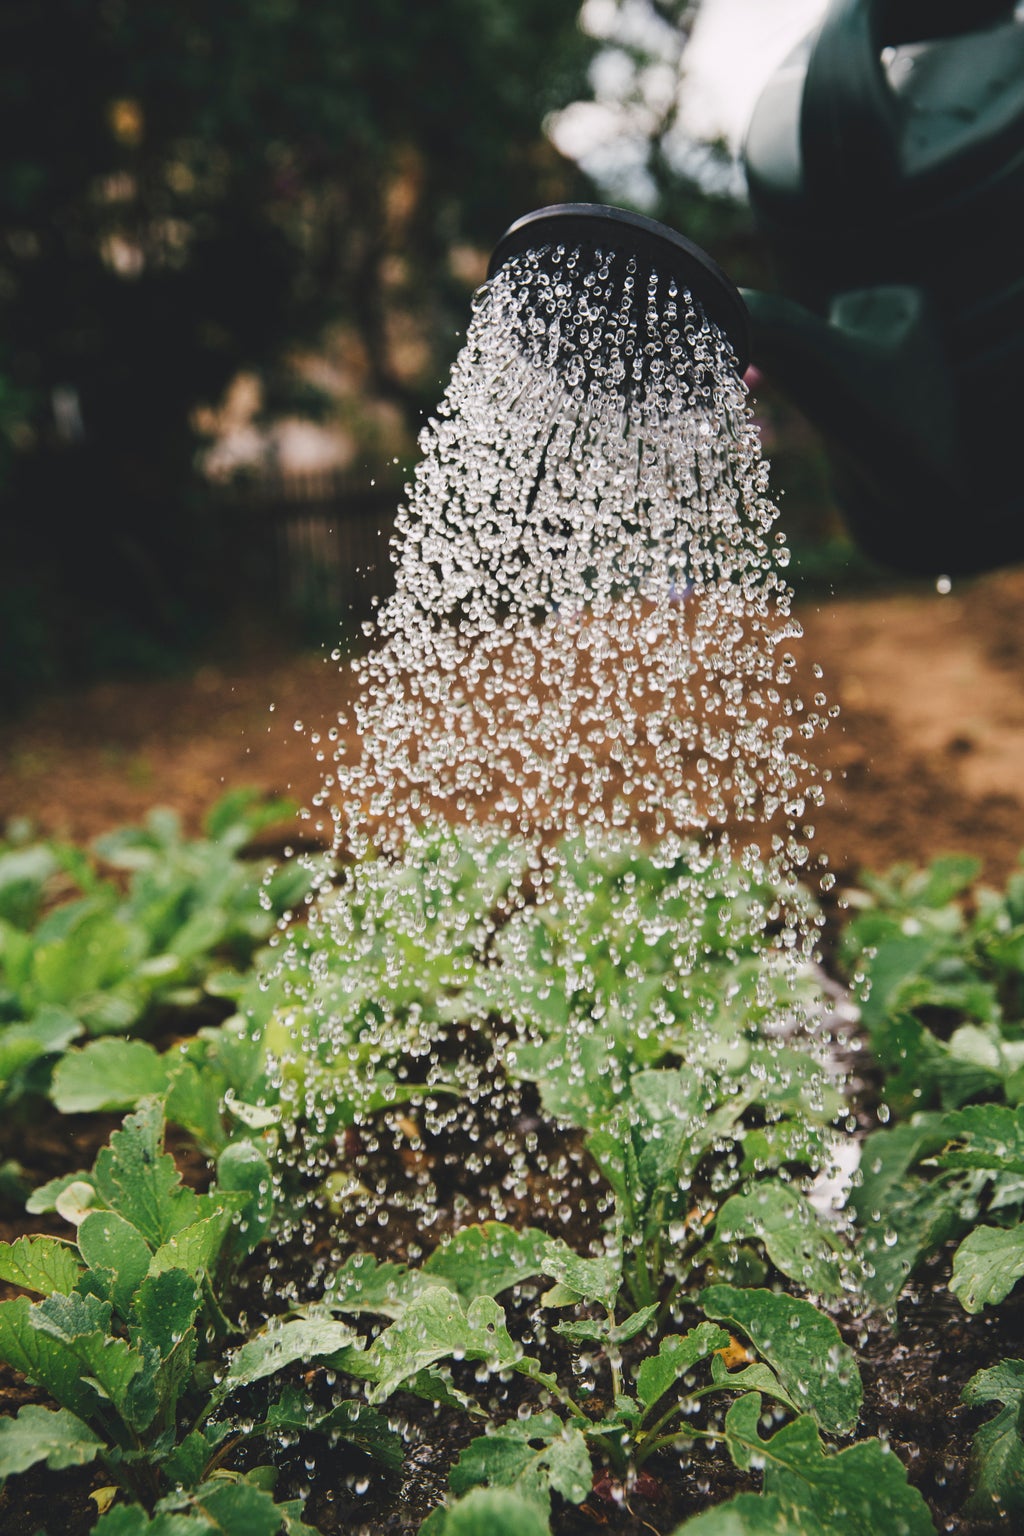 Watering plants in a garden